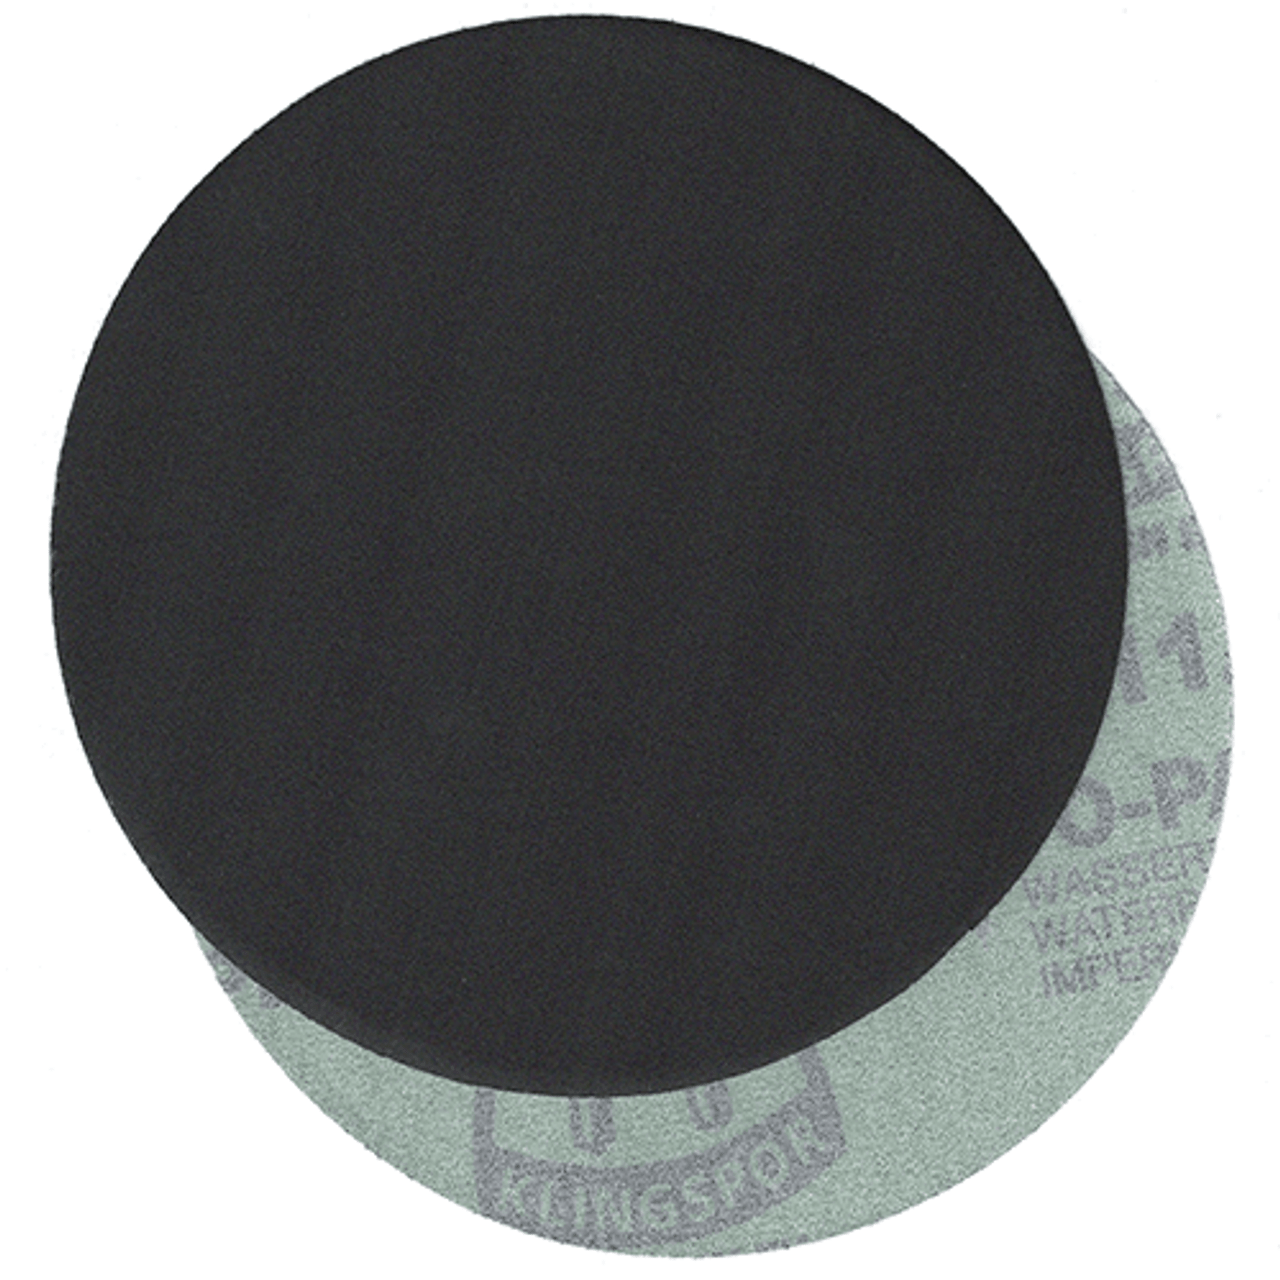 Klingspor Abrasives 6" No Hole, Wet/Dry Silicon Carbide, H&L Discs, 1200 Grit, 50pk